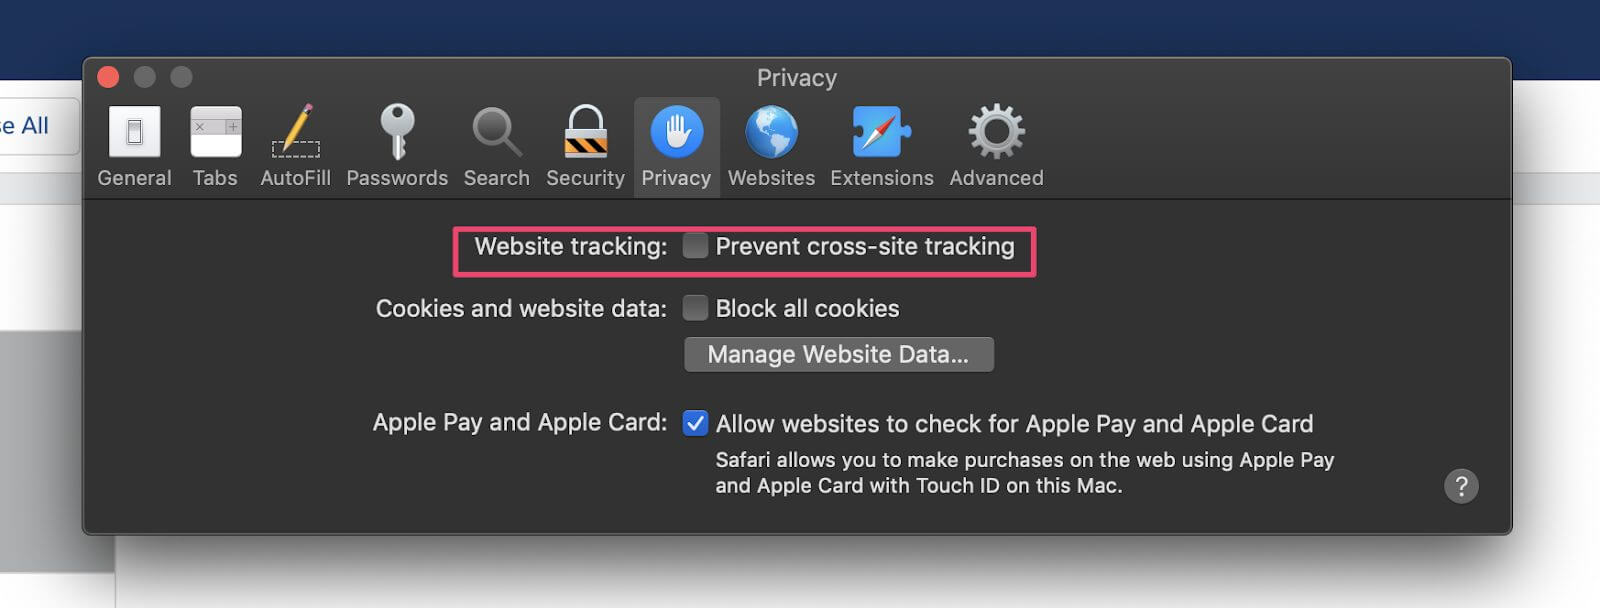 Safari - Prevent cross-site tracking